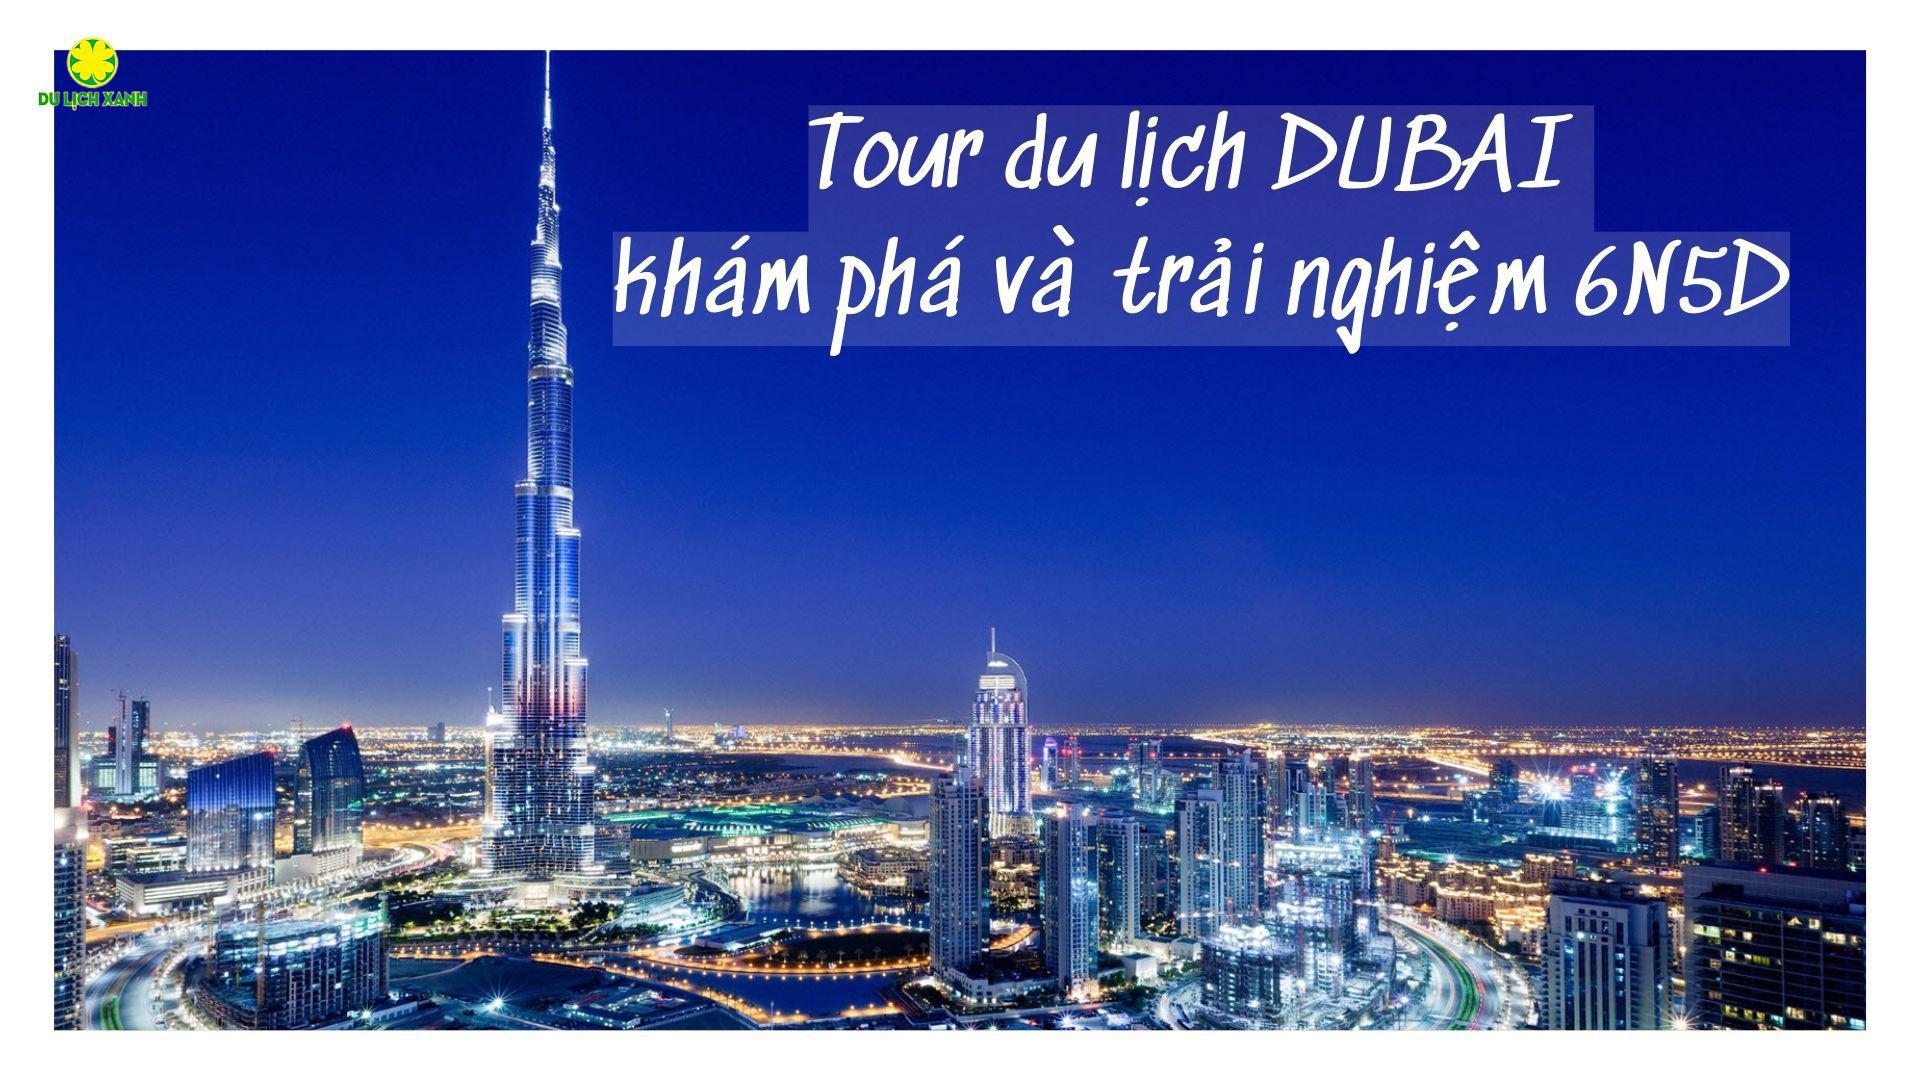 Tour du lịch khám phá và trải nghiệm DUBAI 6N5D